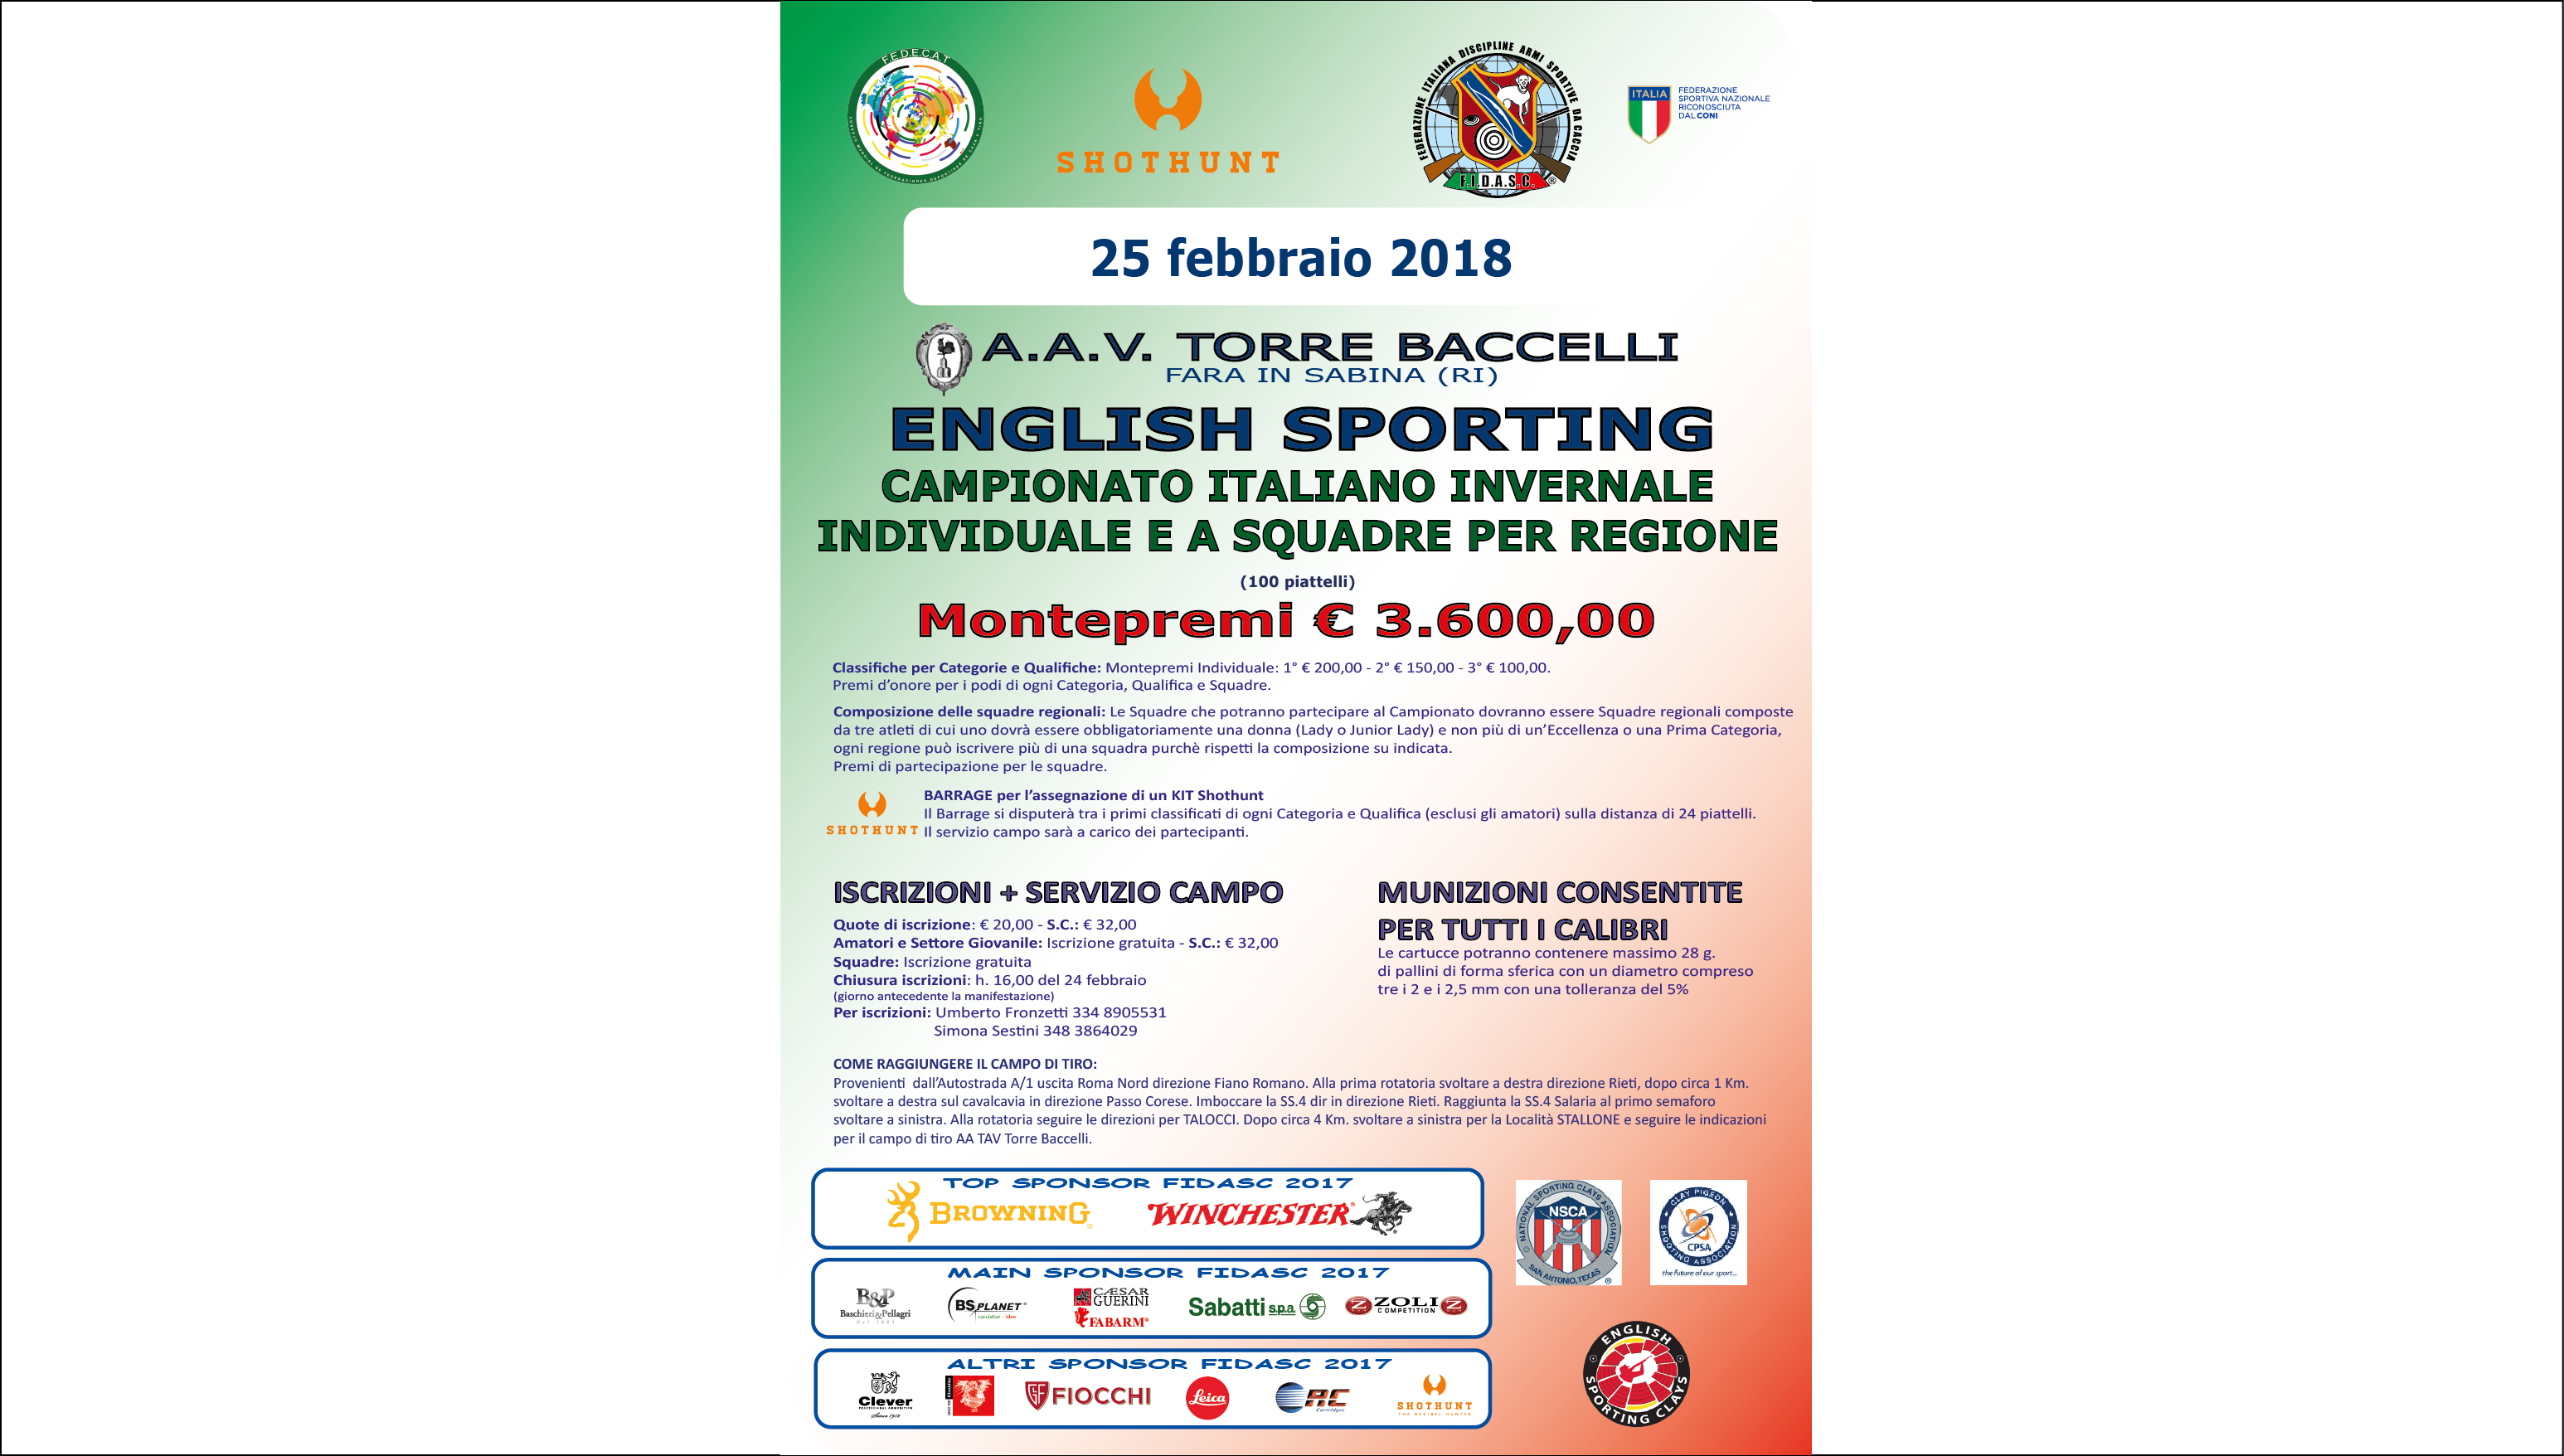 English Sporting - Campionato Italiano Invernale